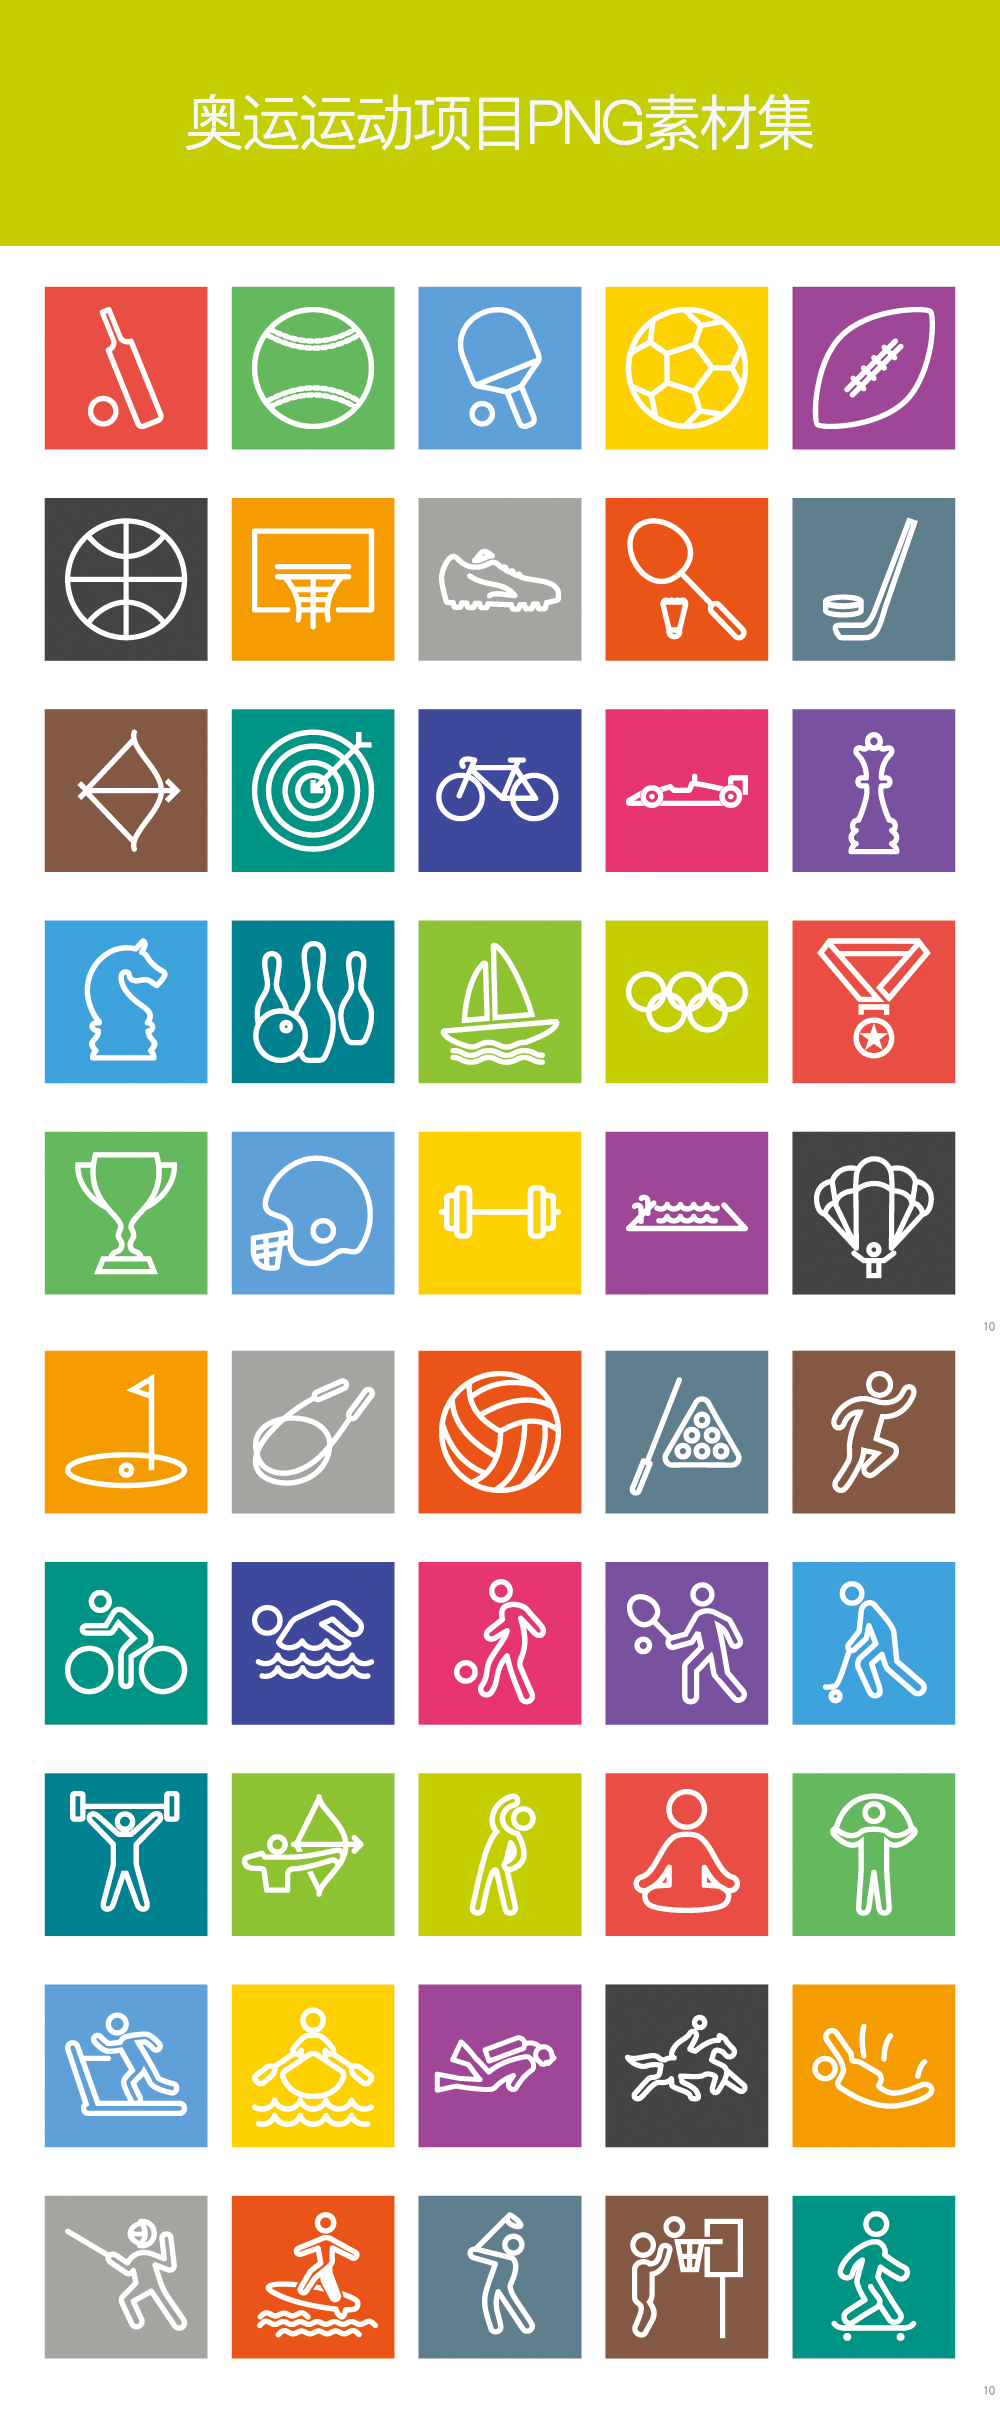 线性的奥运比赛项目PNG图标大全